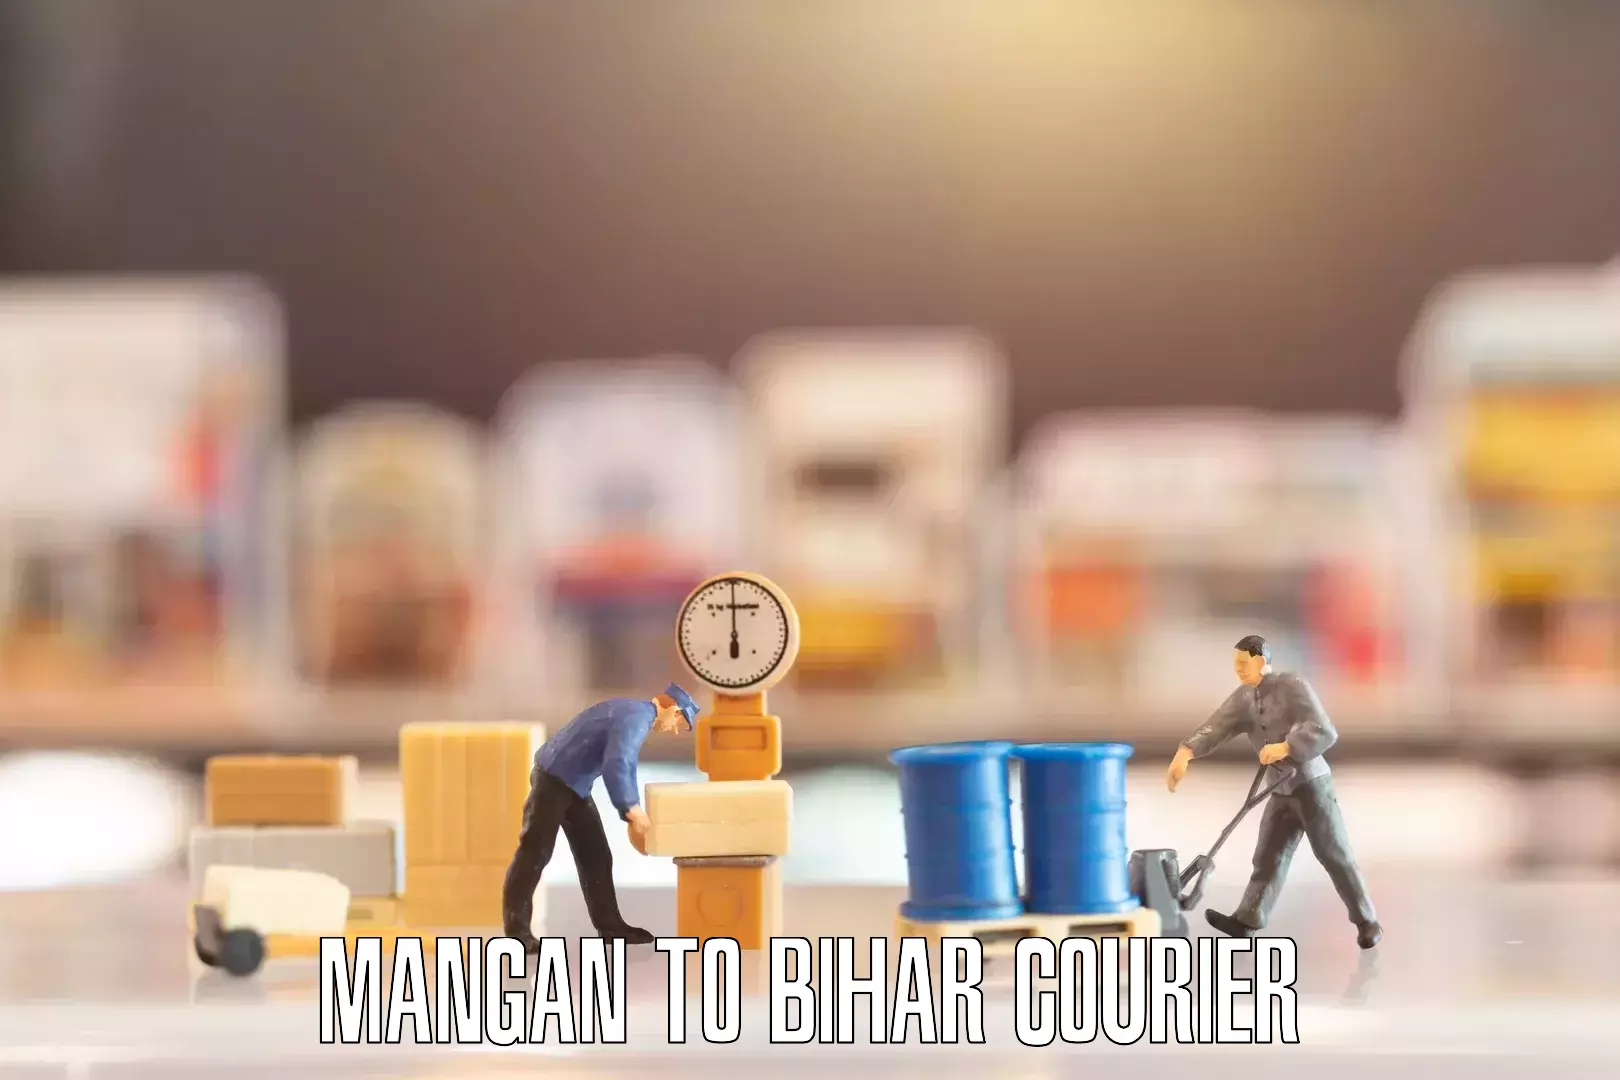 Furniture moving experts in Mangan to Bihta